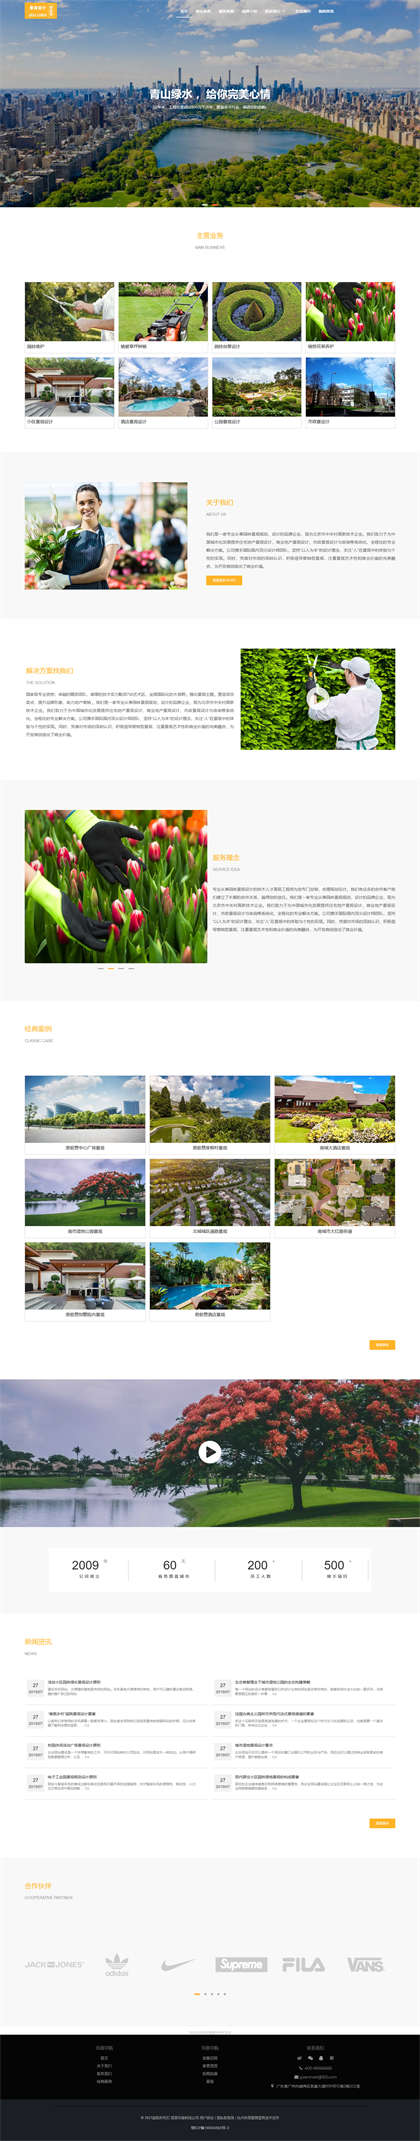 园林设计-园林维护-景观设计-园林种植-林业公司-园林公司网站模板网站模板预览图片